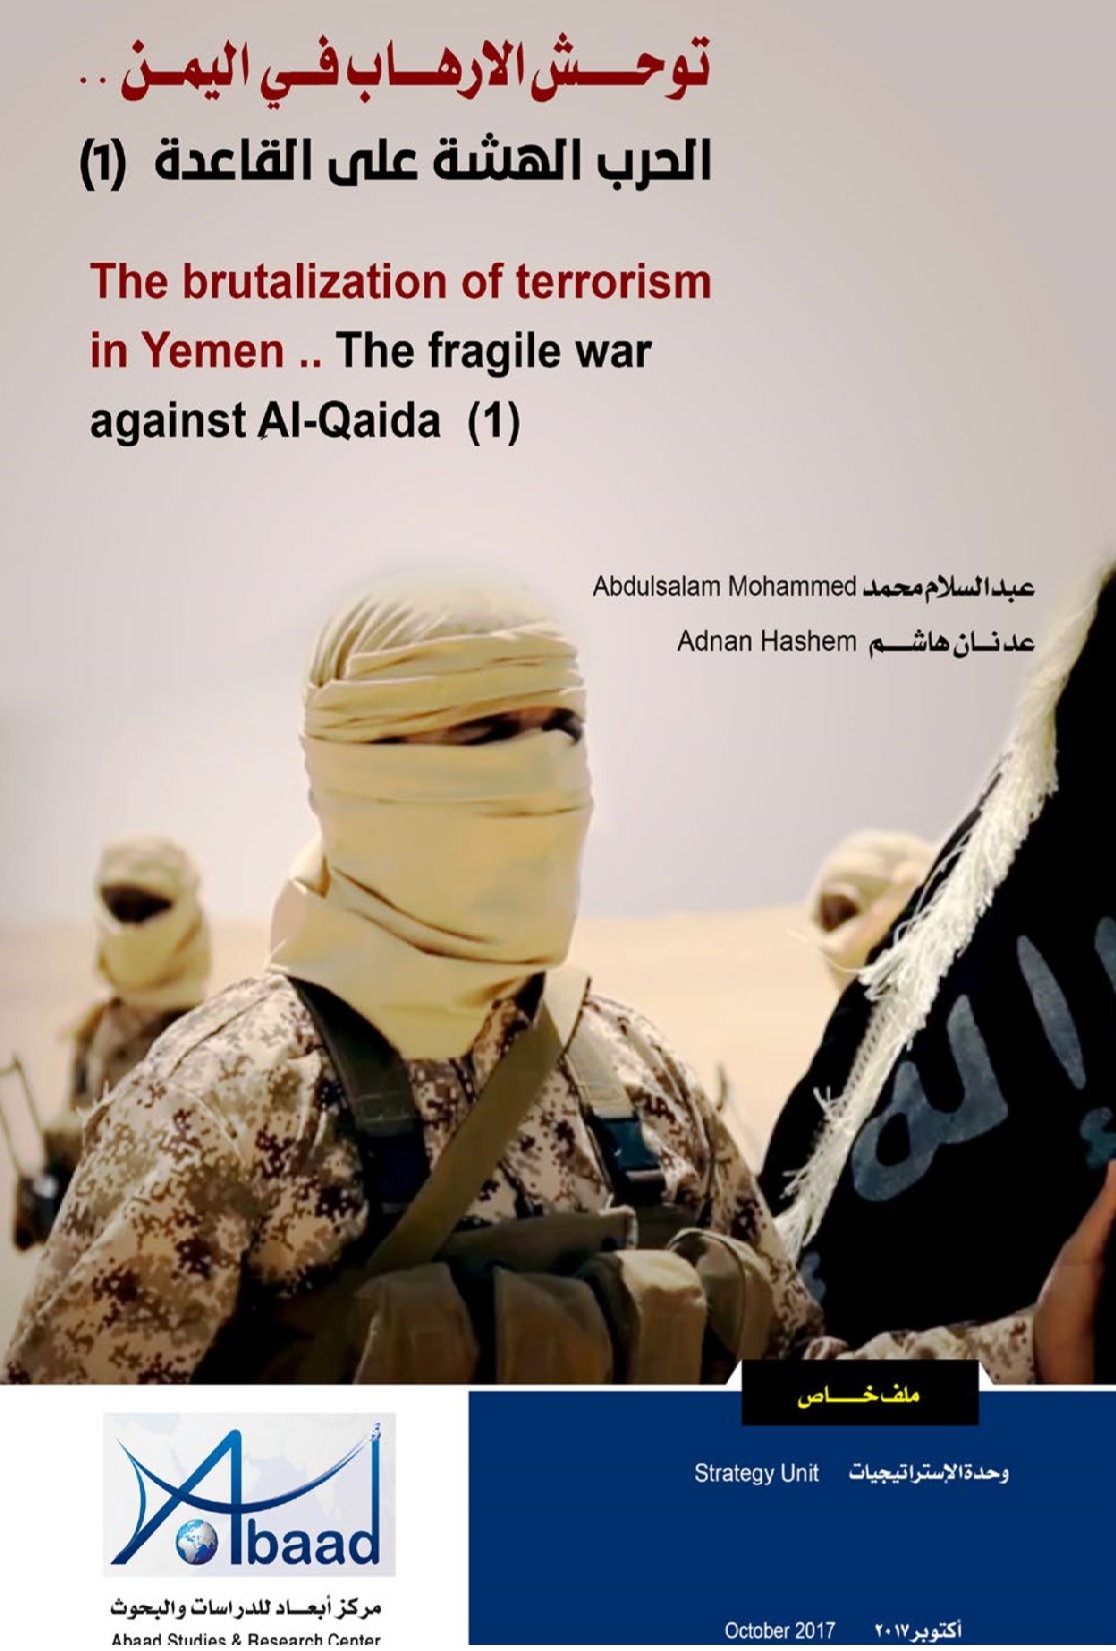  توحش الارهاب في اليمن.. الحرب الهشة على القاعدة (1) 